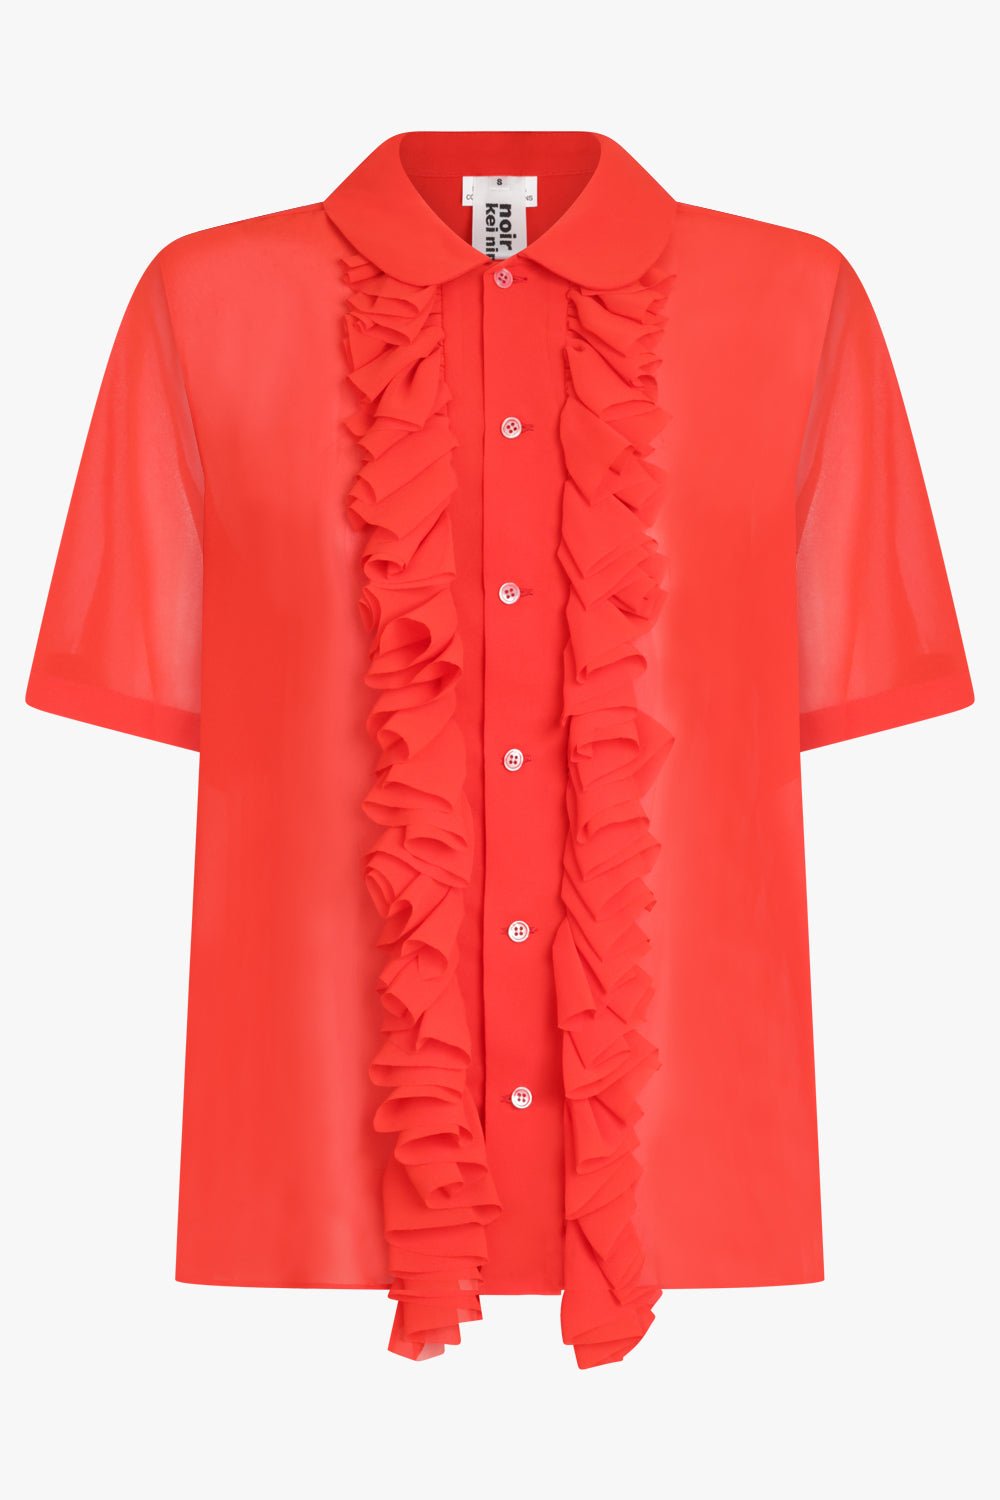 NOIR KEI NINOMIYA RTW Sheer Ruffle Detail S/S Shirt | Red